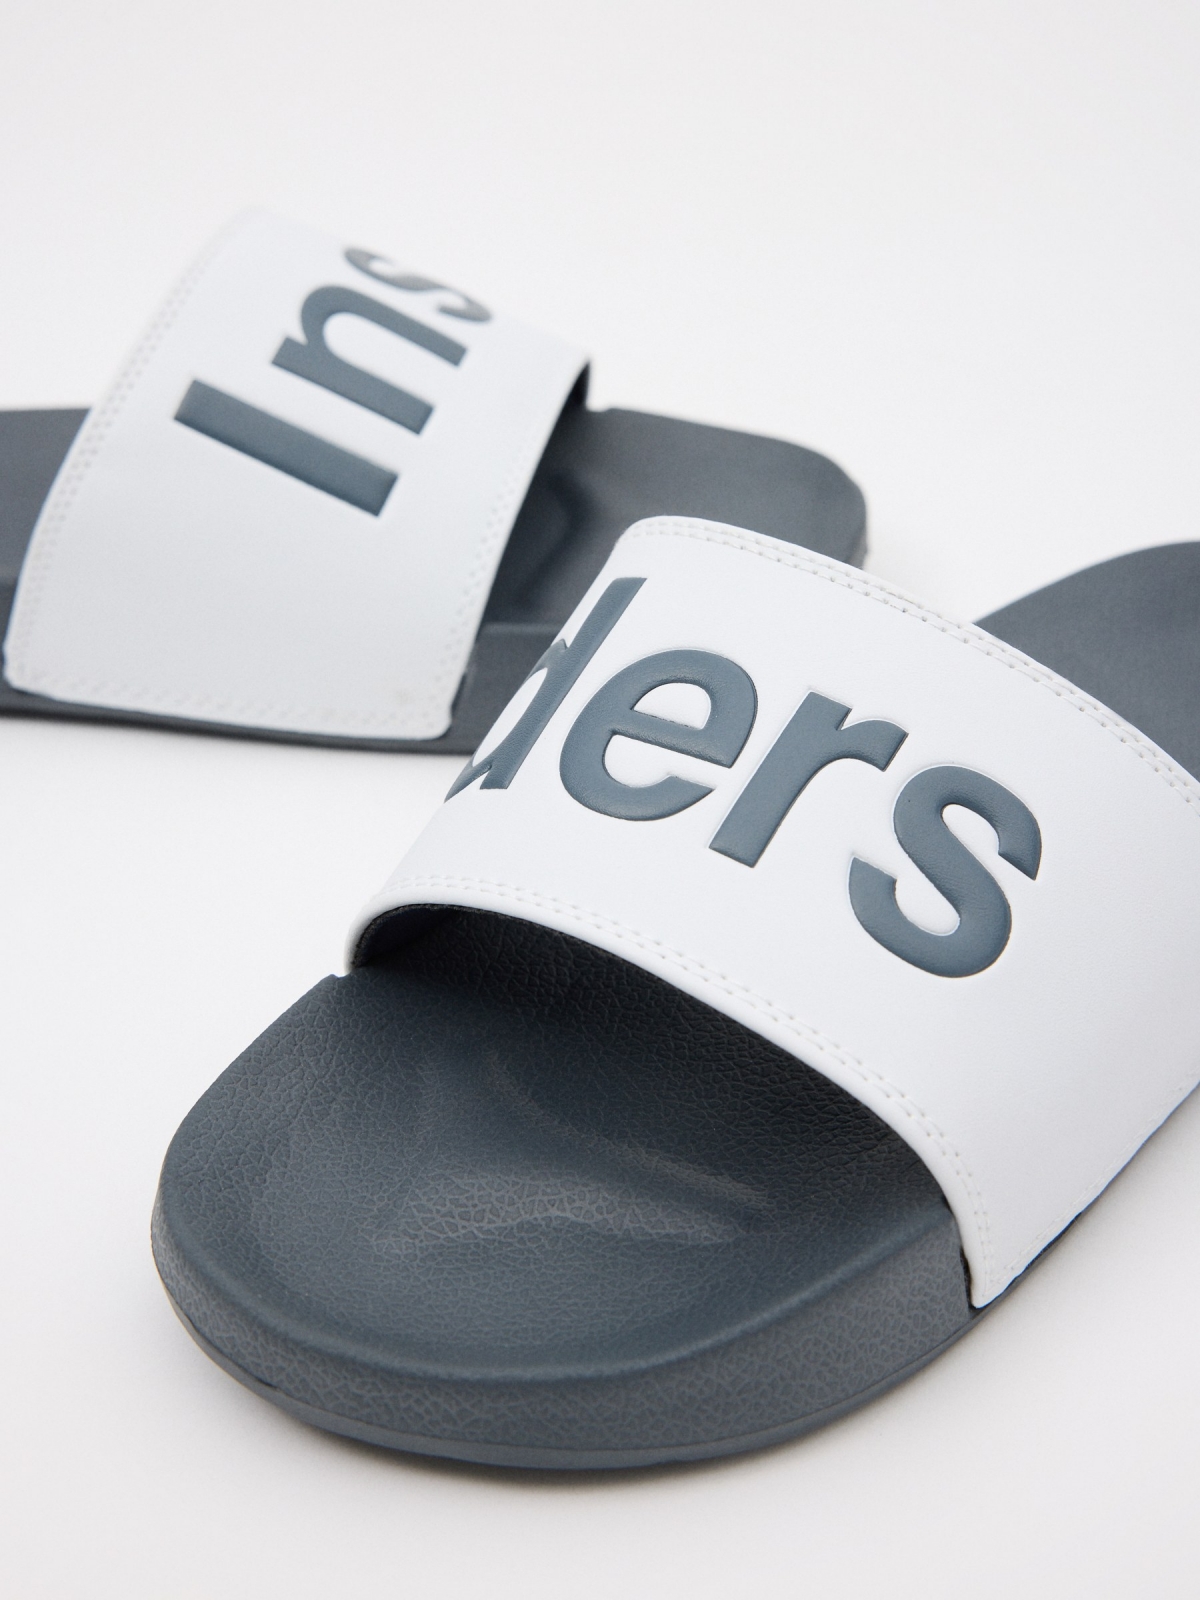 Flip-flops com letras vista detalhe